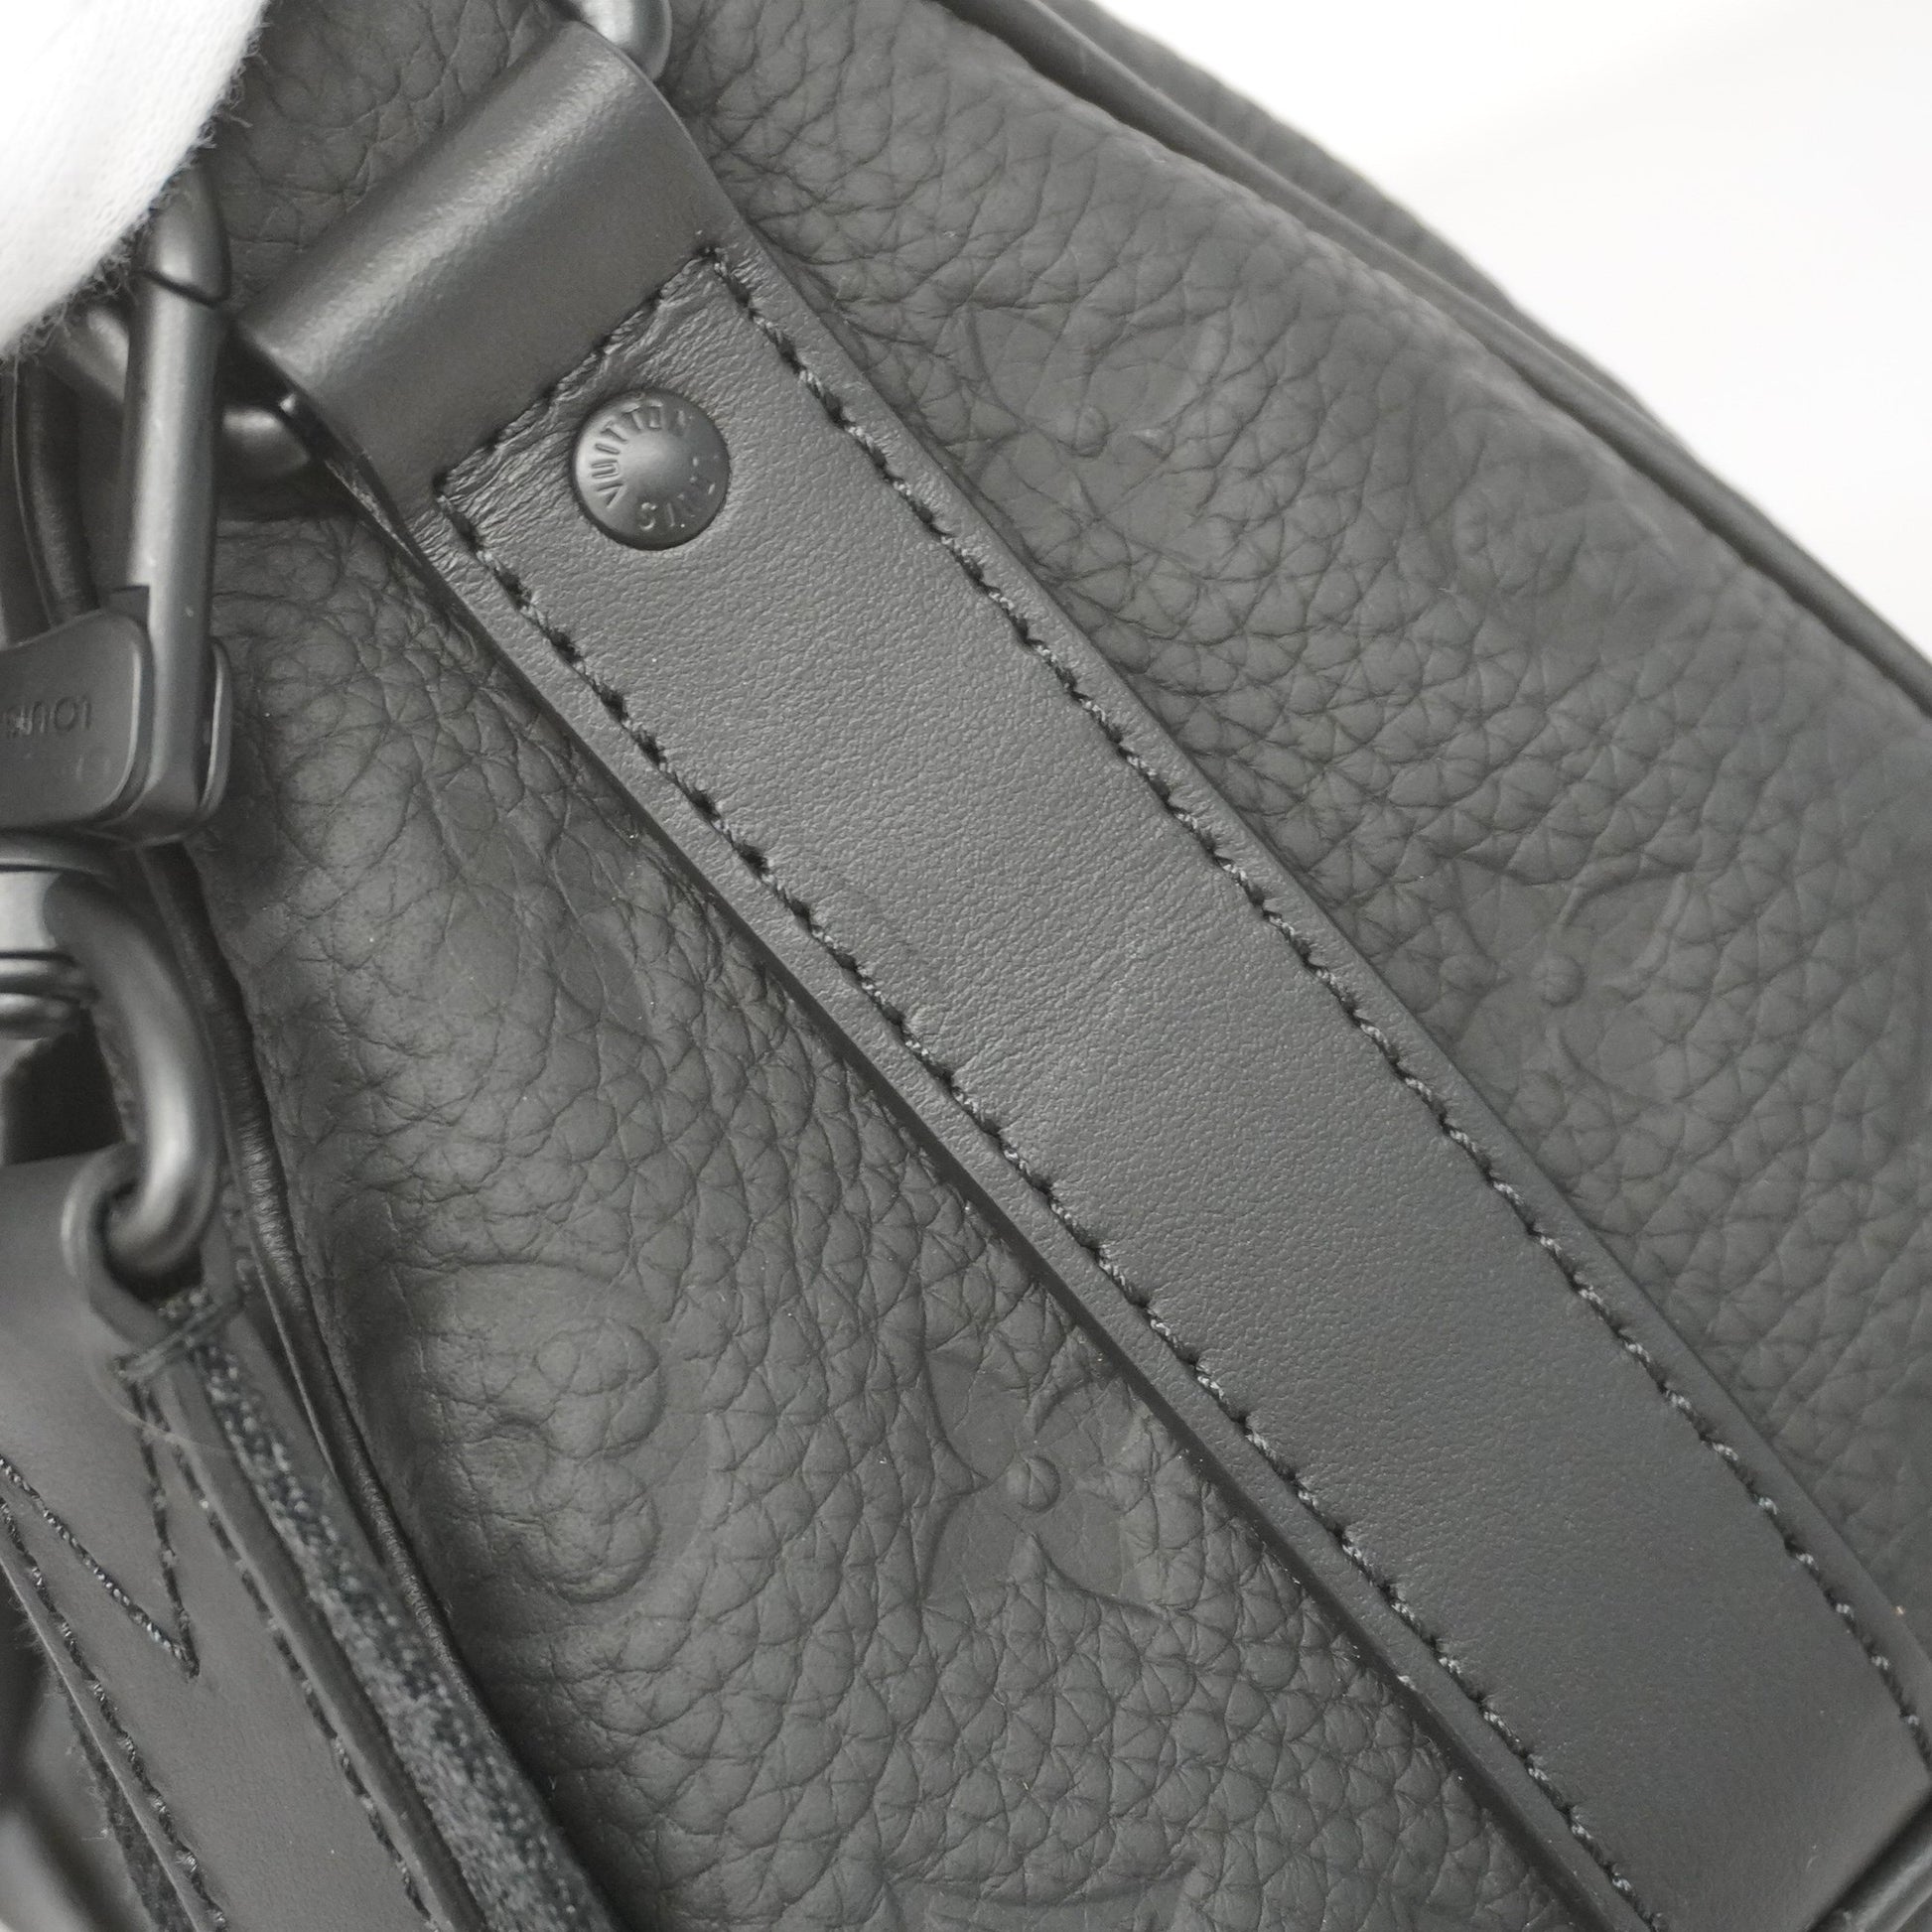 Louis Vuitton Keepall Bandouliere 25 Noir M20900 Taurillon Leather  w/Accessoires